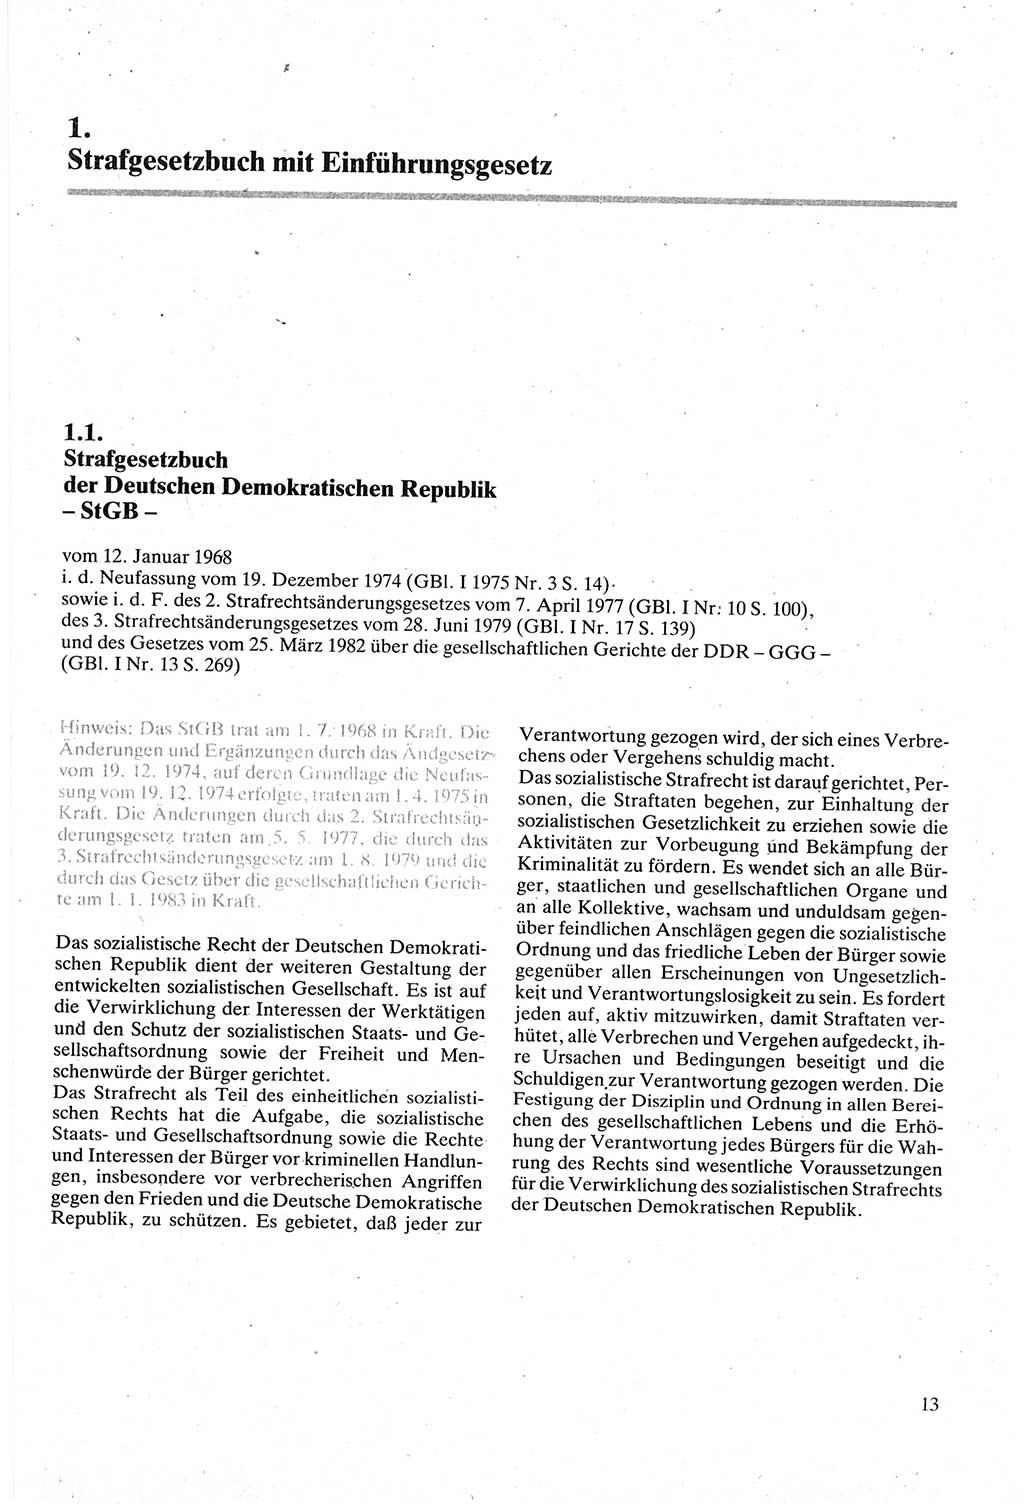 Strafgesetzbuch (StGB) der Deutschen Demokratischen Republik (DDR) sowie angrenzende Gesetze und Bestimmungen 1979, Seite 13 (StGB DDR Ges. Best. 1979, S. 13)